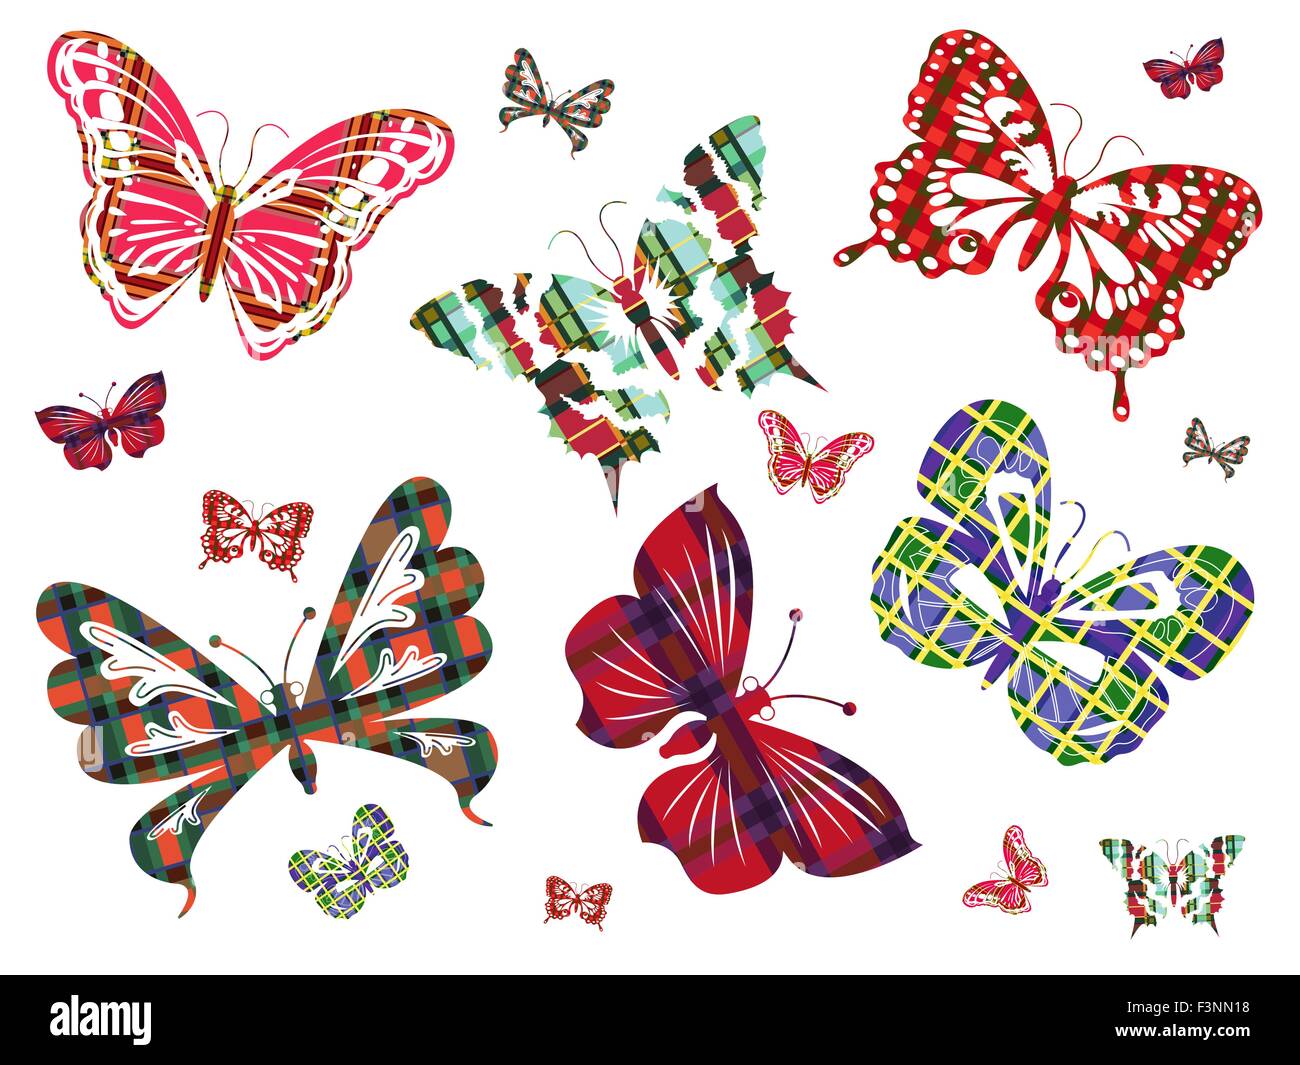 Sechs verschiedene große Schmetterlinge mit keltischen Ornamenten und mehrere ihrer kleineren Versionen auf einem weißen Hintergrund. Handzeichnung Stock Vektor